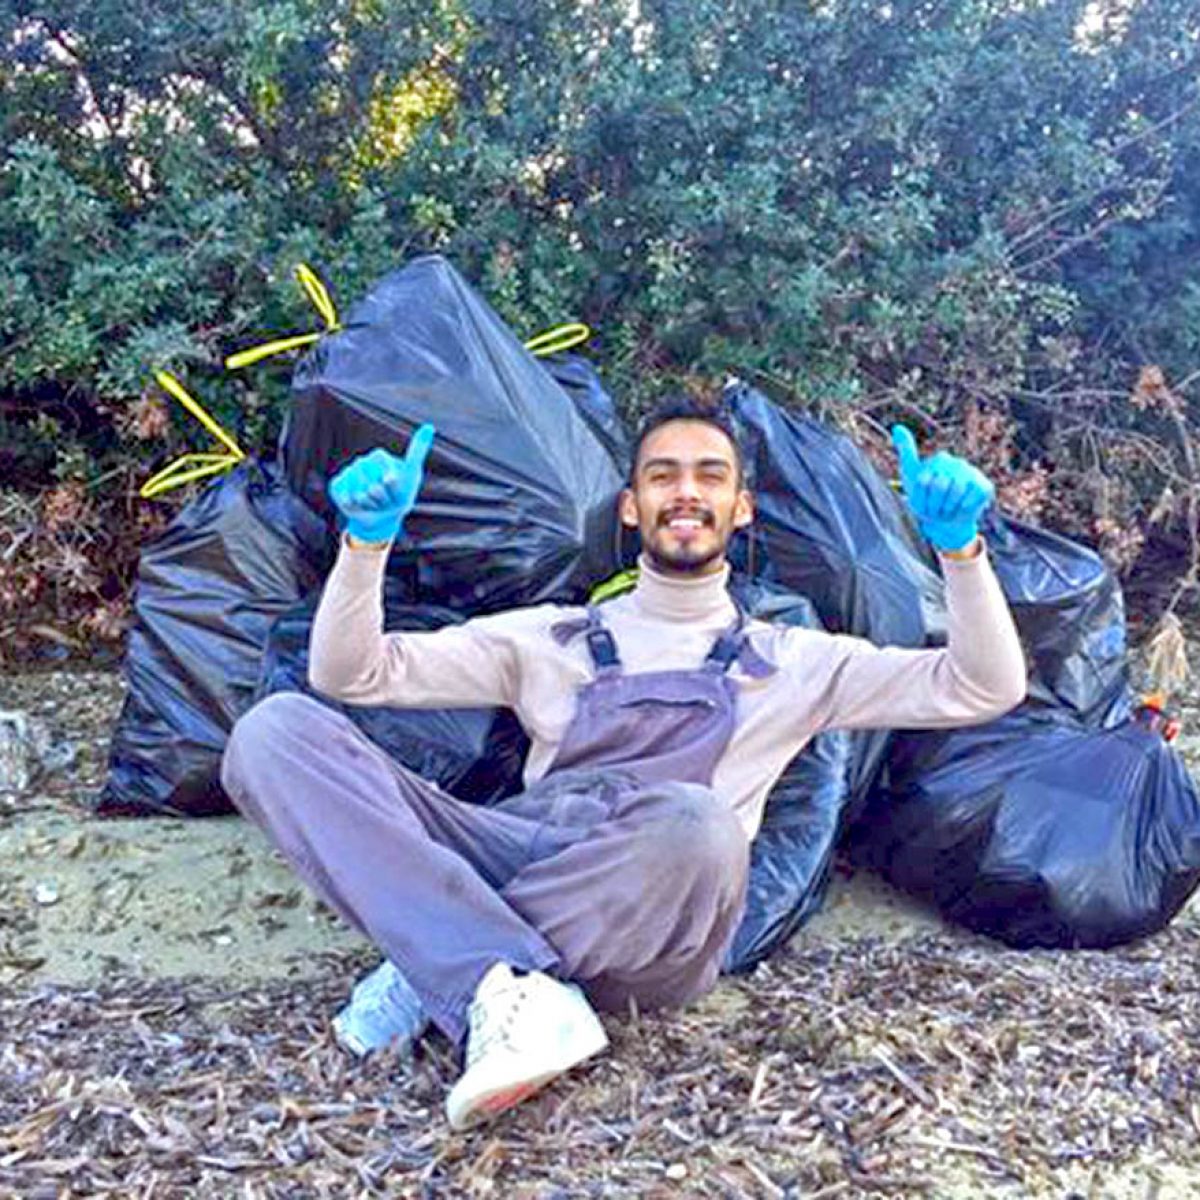 Έλληνας πήρε γάντια και σακούλες και καθάρισε μια ολόκληρη παραλία